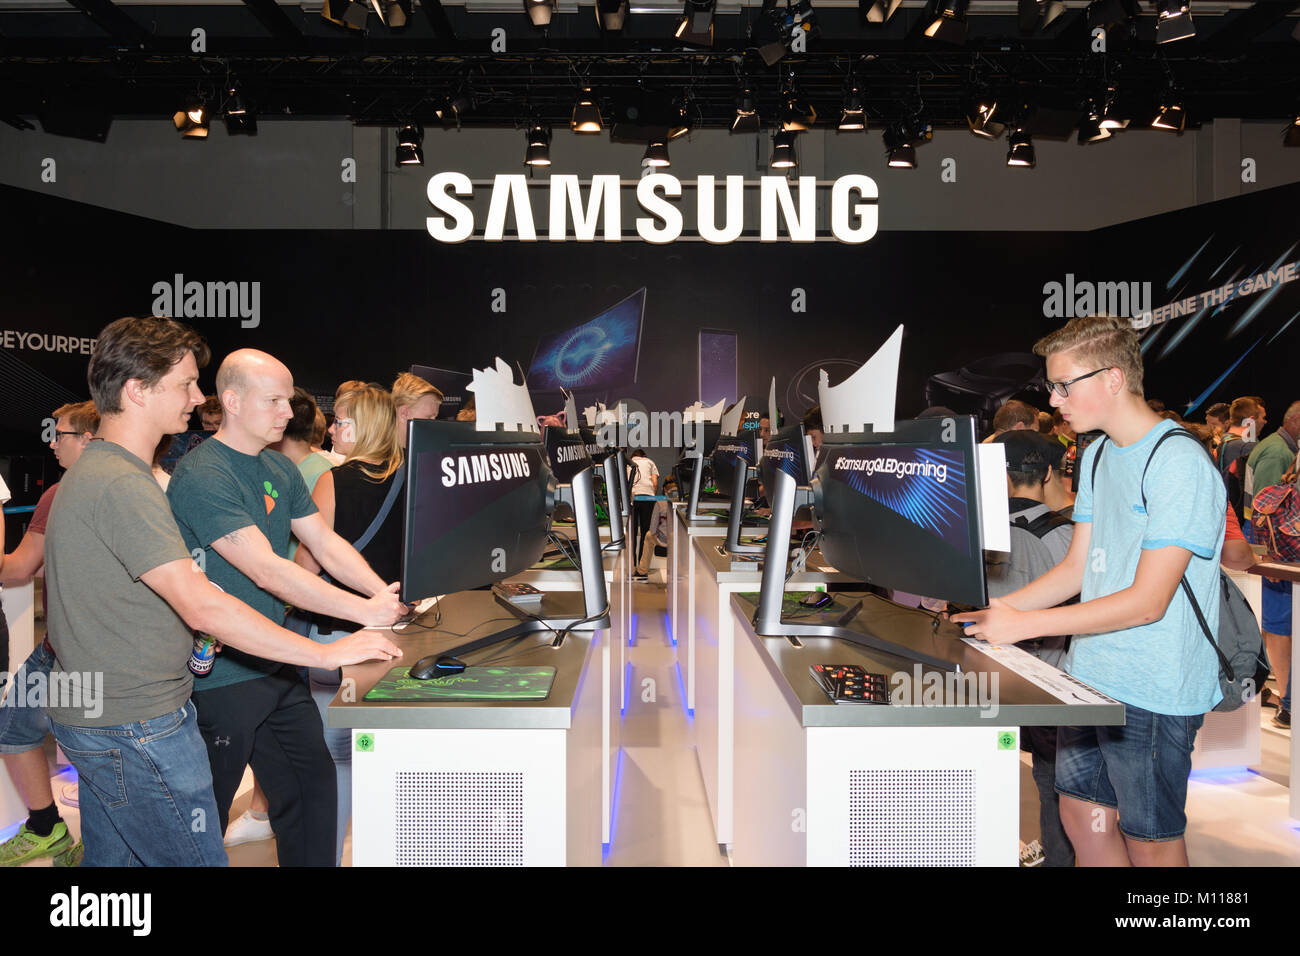 Colonia, Alemania - Agosto 24, 2017: visitantes de ferias jugar y probar los juegos de ordenador en el stand de la empresa de electrónica Samsung en la feria gamescom de 2017. Foto de stock